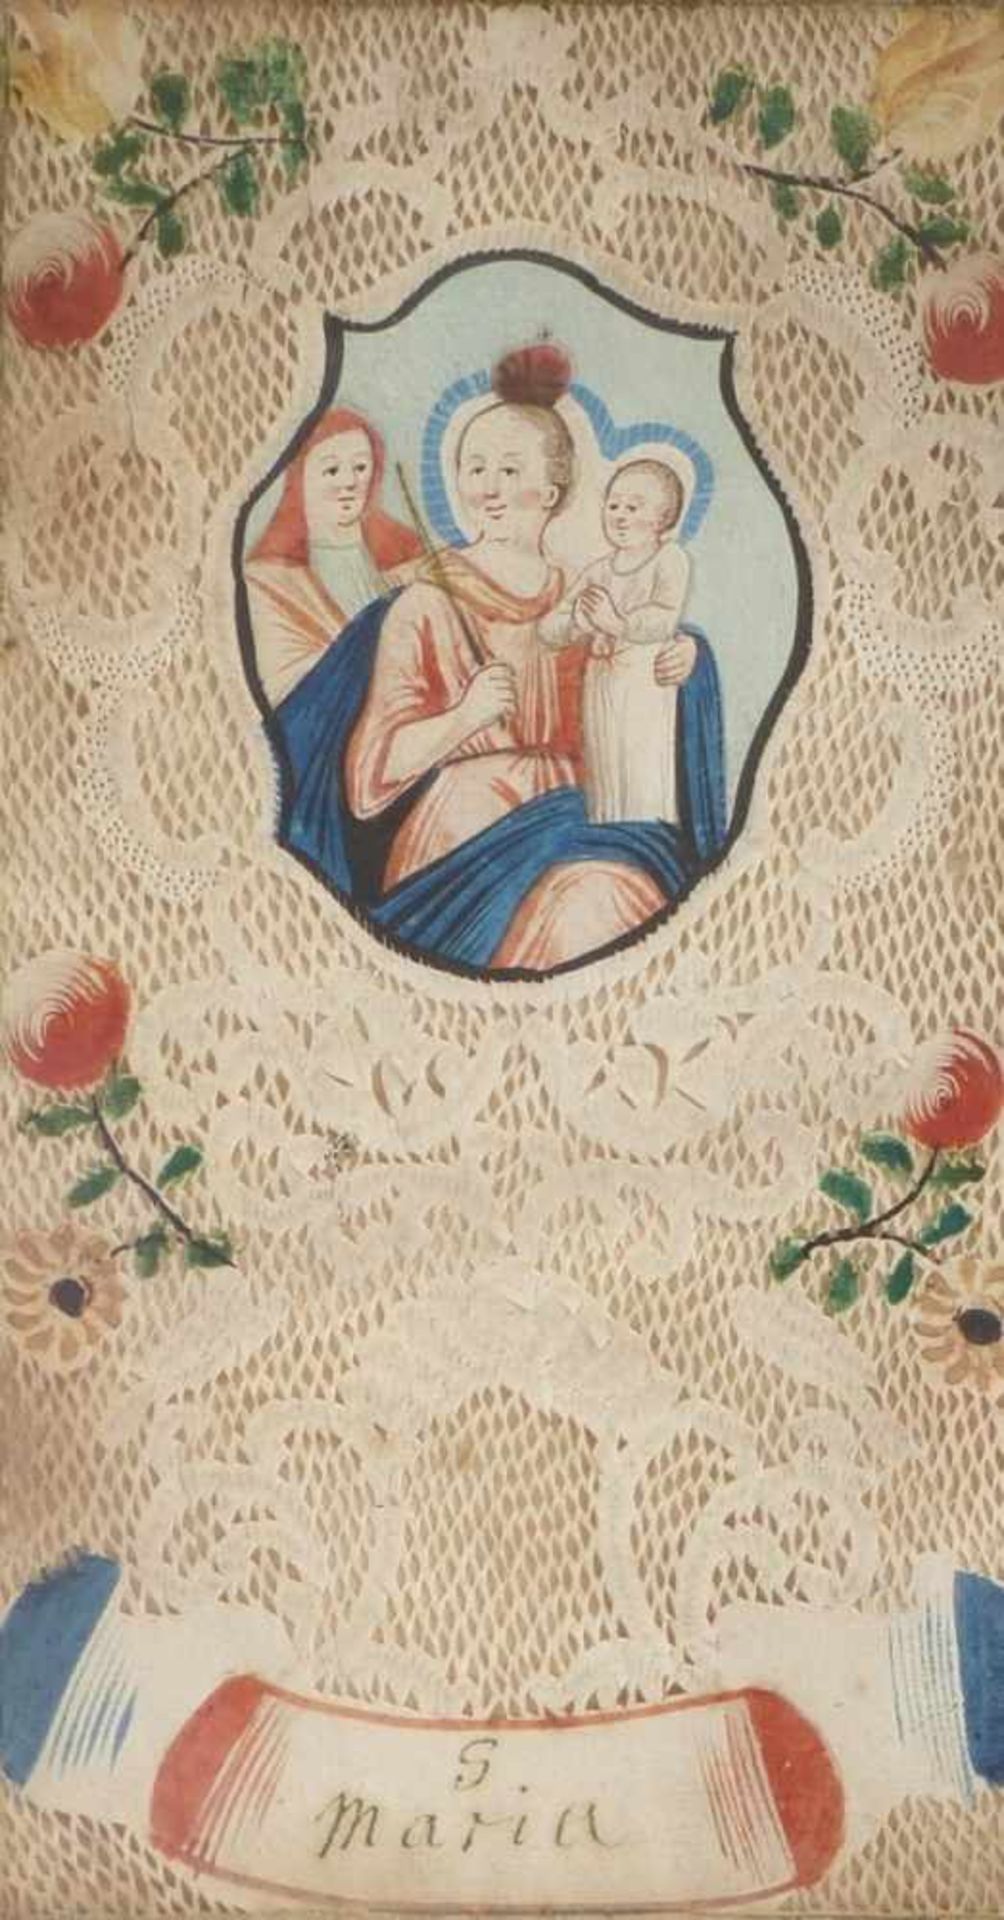 Großes SpitzenbildUm 1800Im Hochrechteck Kartusche mit Darstellung der bekrönten Madonna mit Kind,